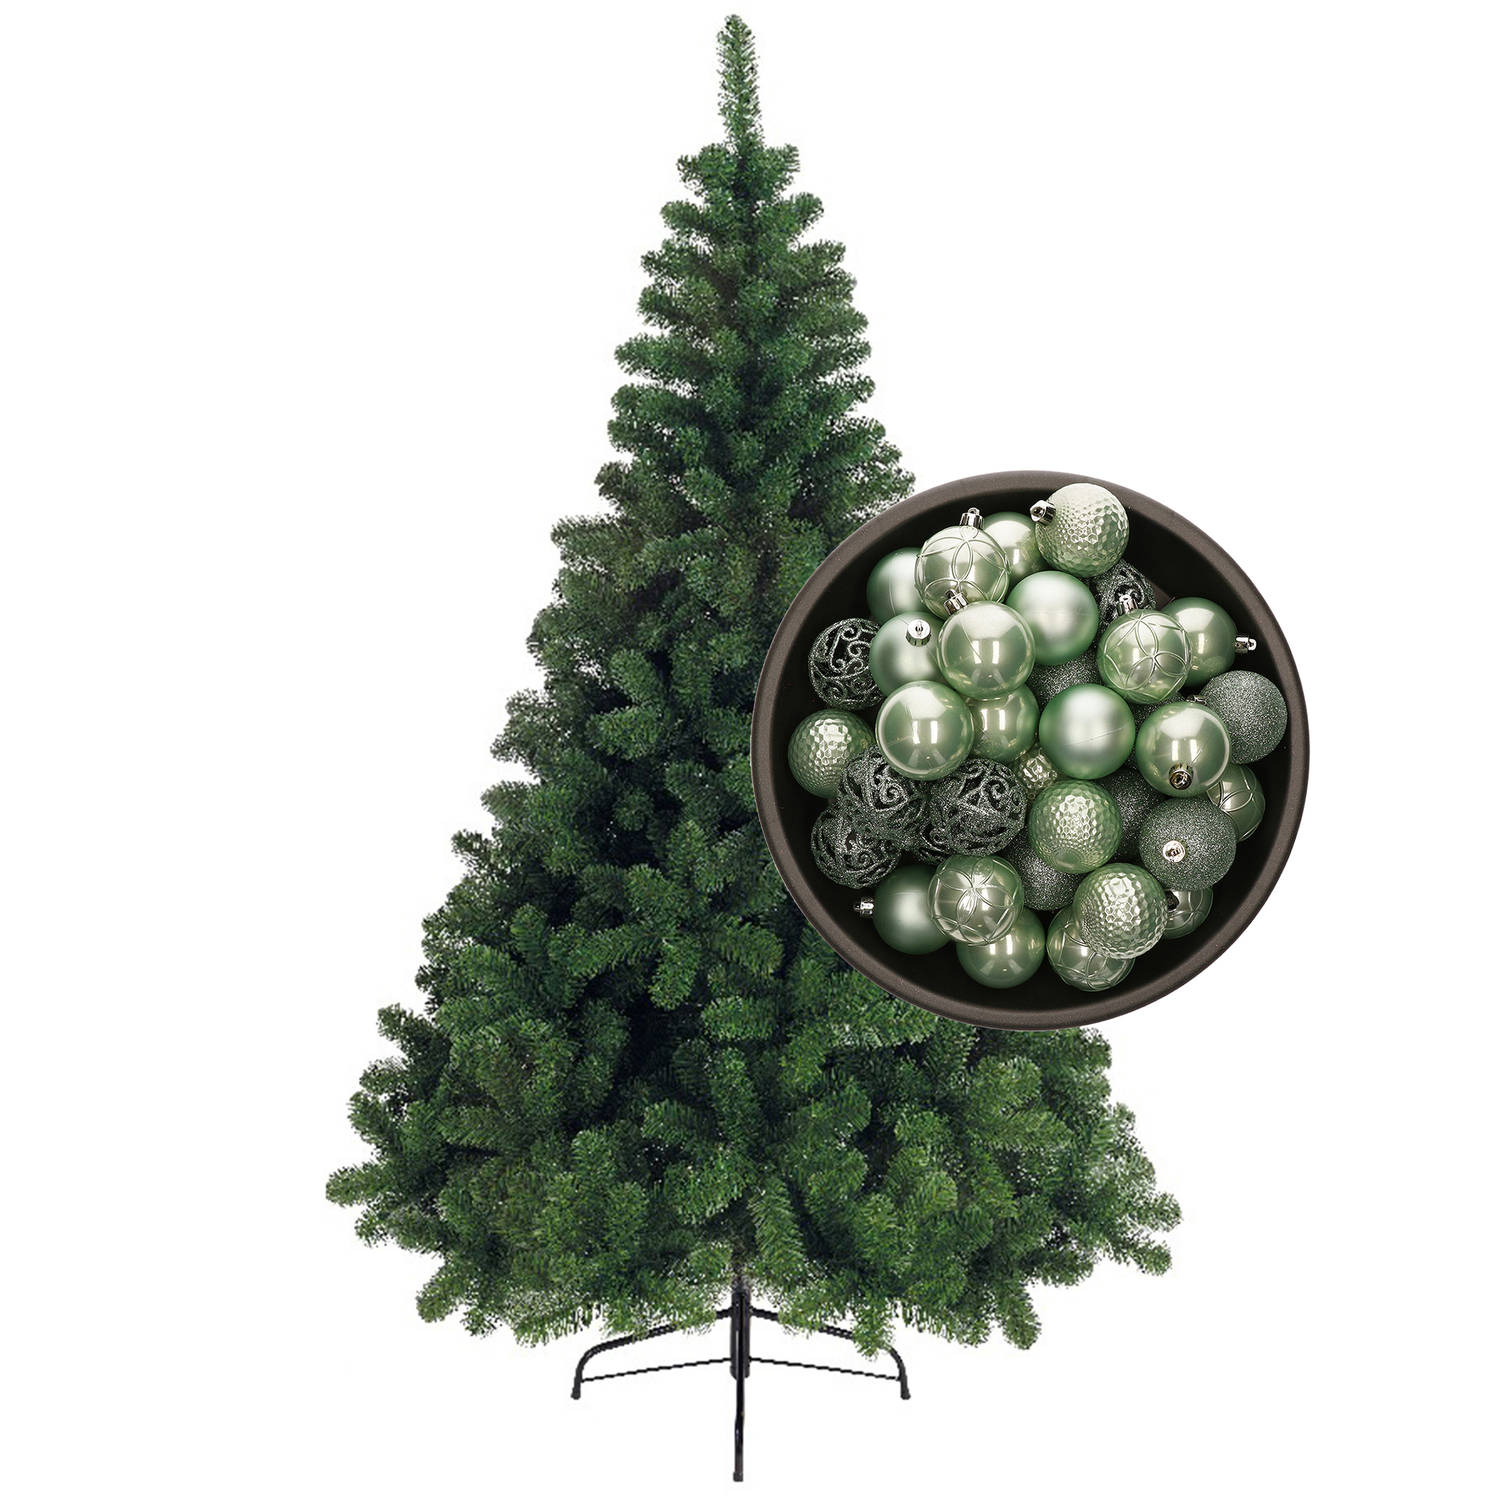 Bellatio Decorations kunst kerstboom 120 cm met kerstballen mintgroen Kunstkerstboom